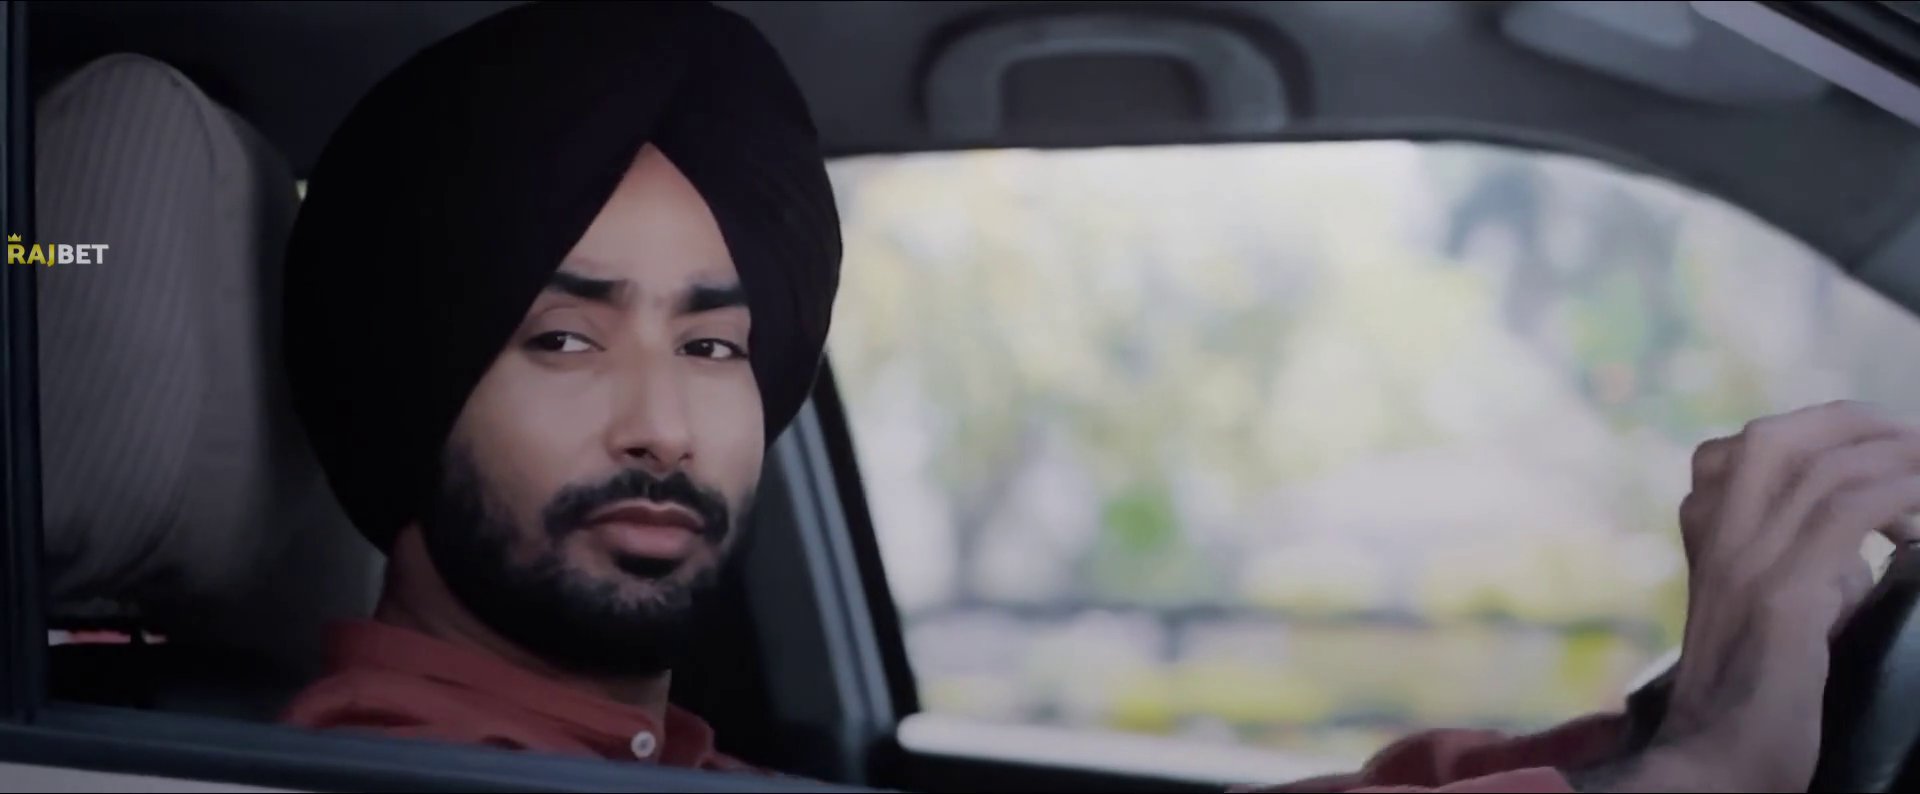 Ikko Mikke 2020 Full Movie Punjabi 1080p CAMRip